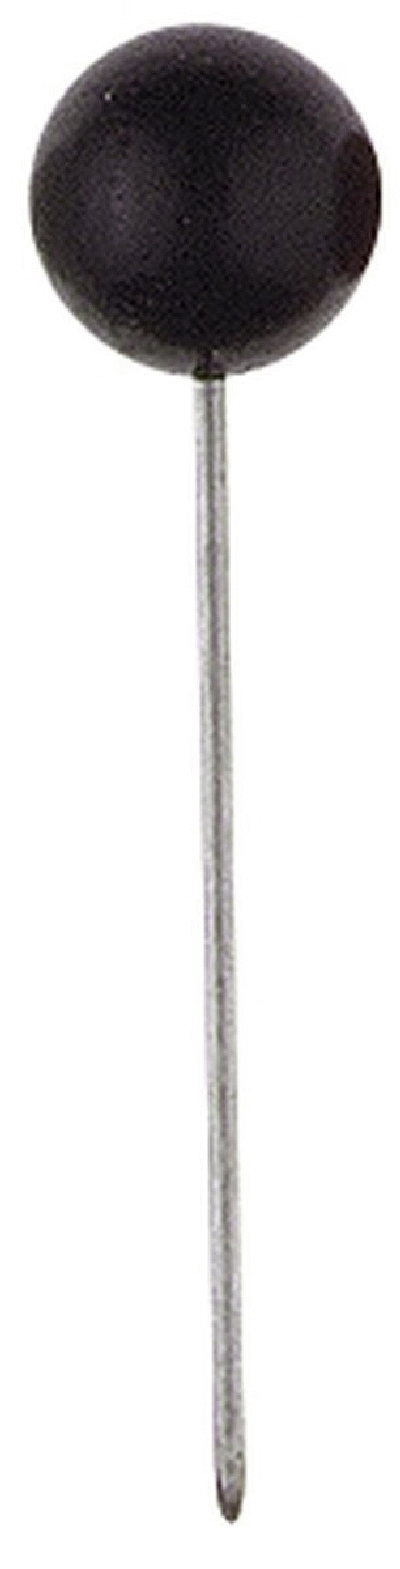 Alco 611 Markiernadel, 16 mm, 5 x 5 mm, Schwarz, Dose mit 100 Stück